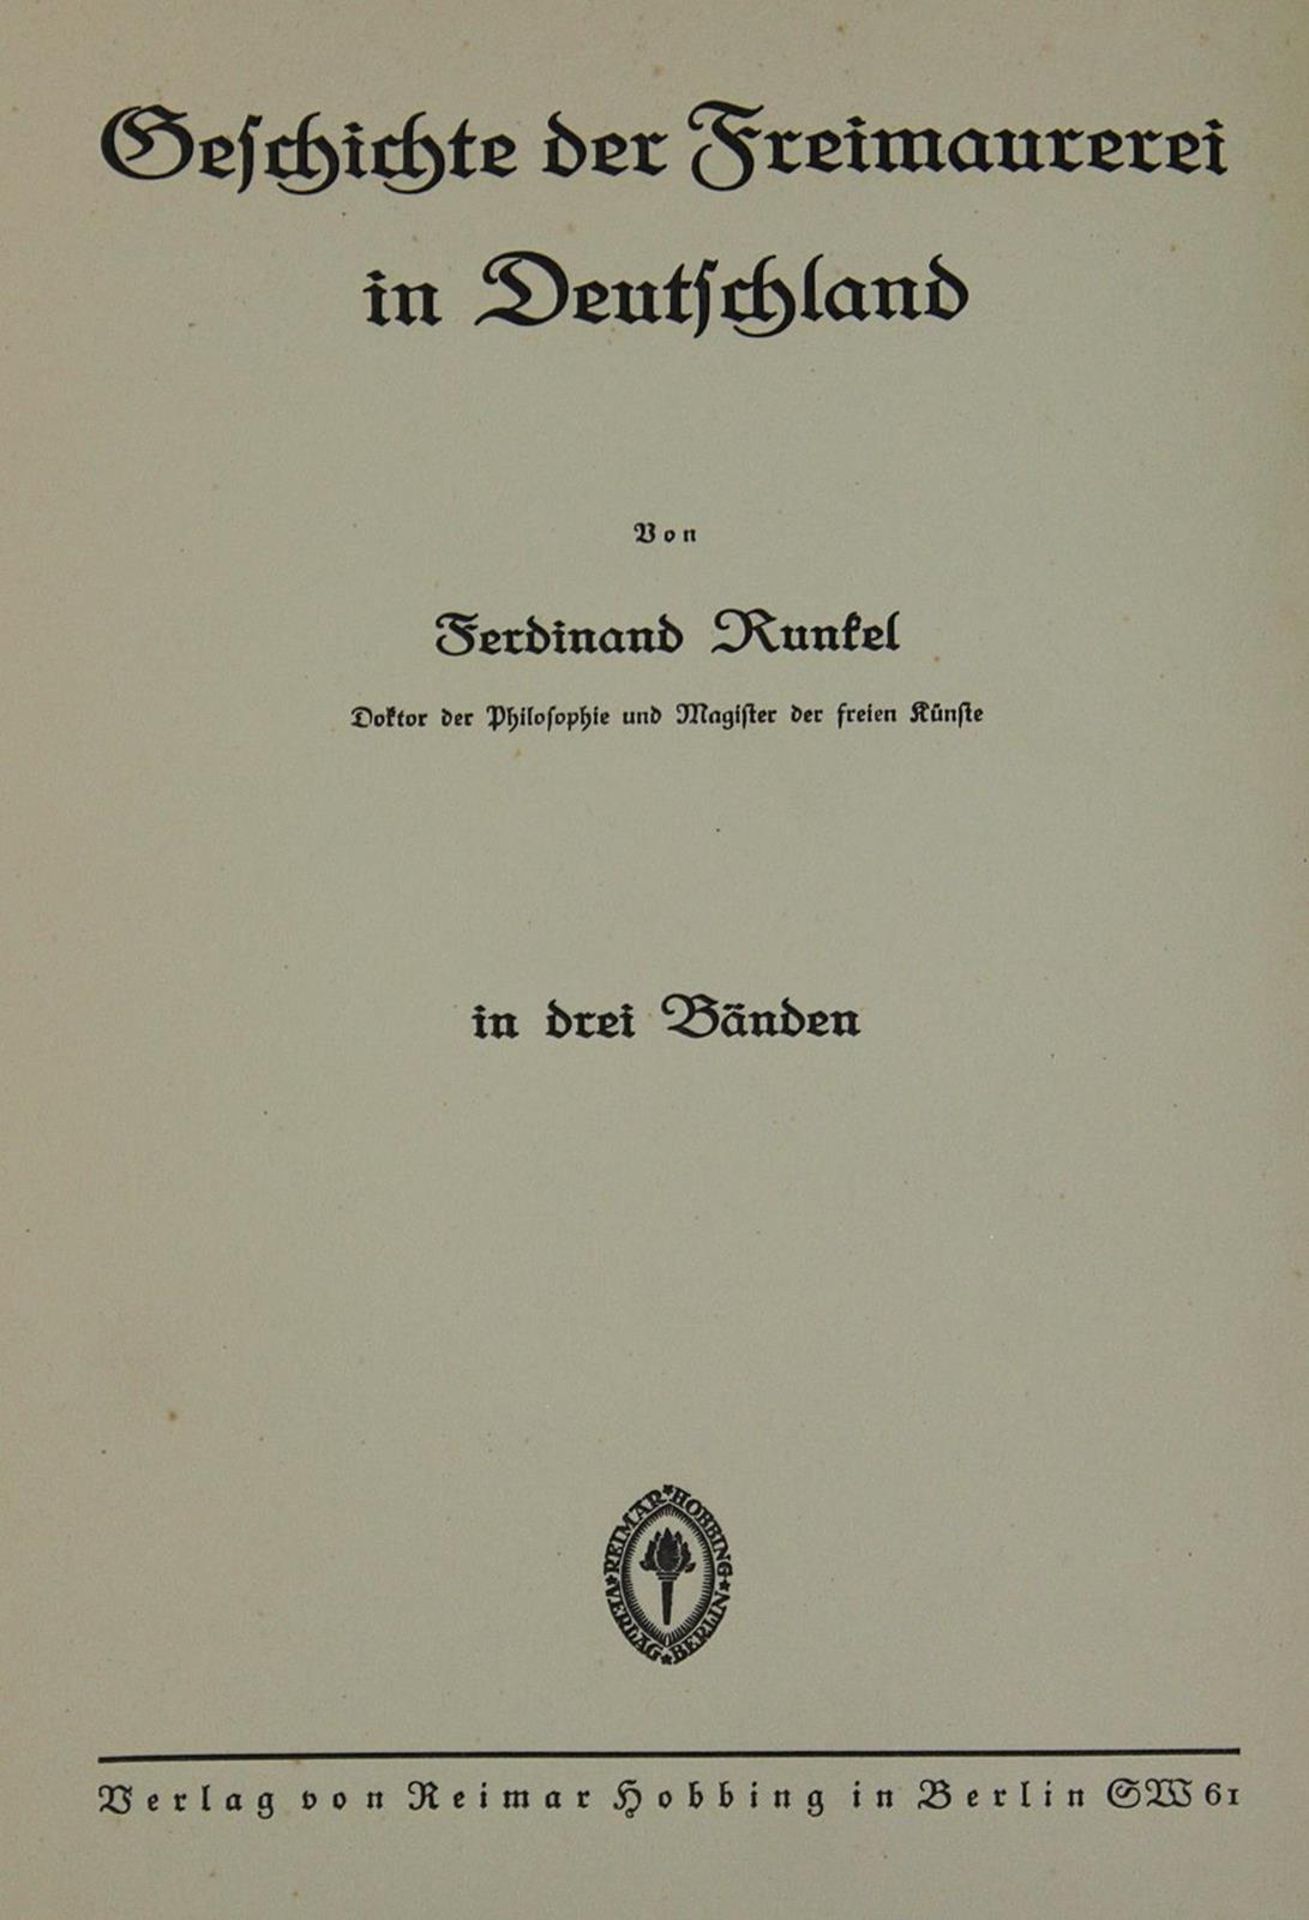 Runkel,F.Geschichte der Freimaurerei in Deutschland. 3 Bde. Bln., Hobbing (1931-32). Kl.4°. Mit - Bild 2 aus 2